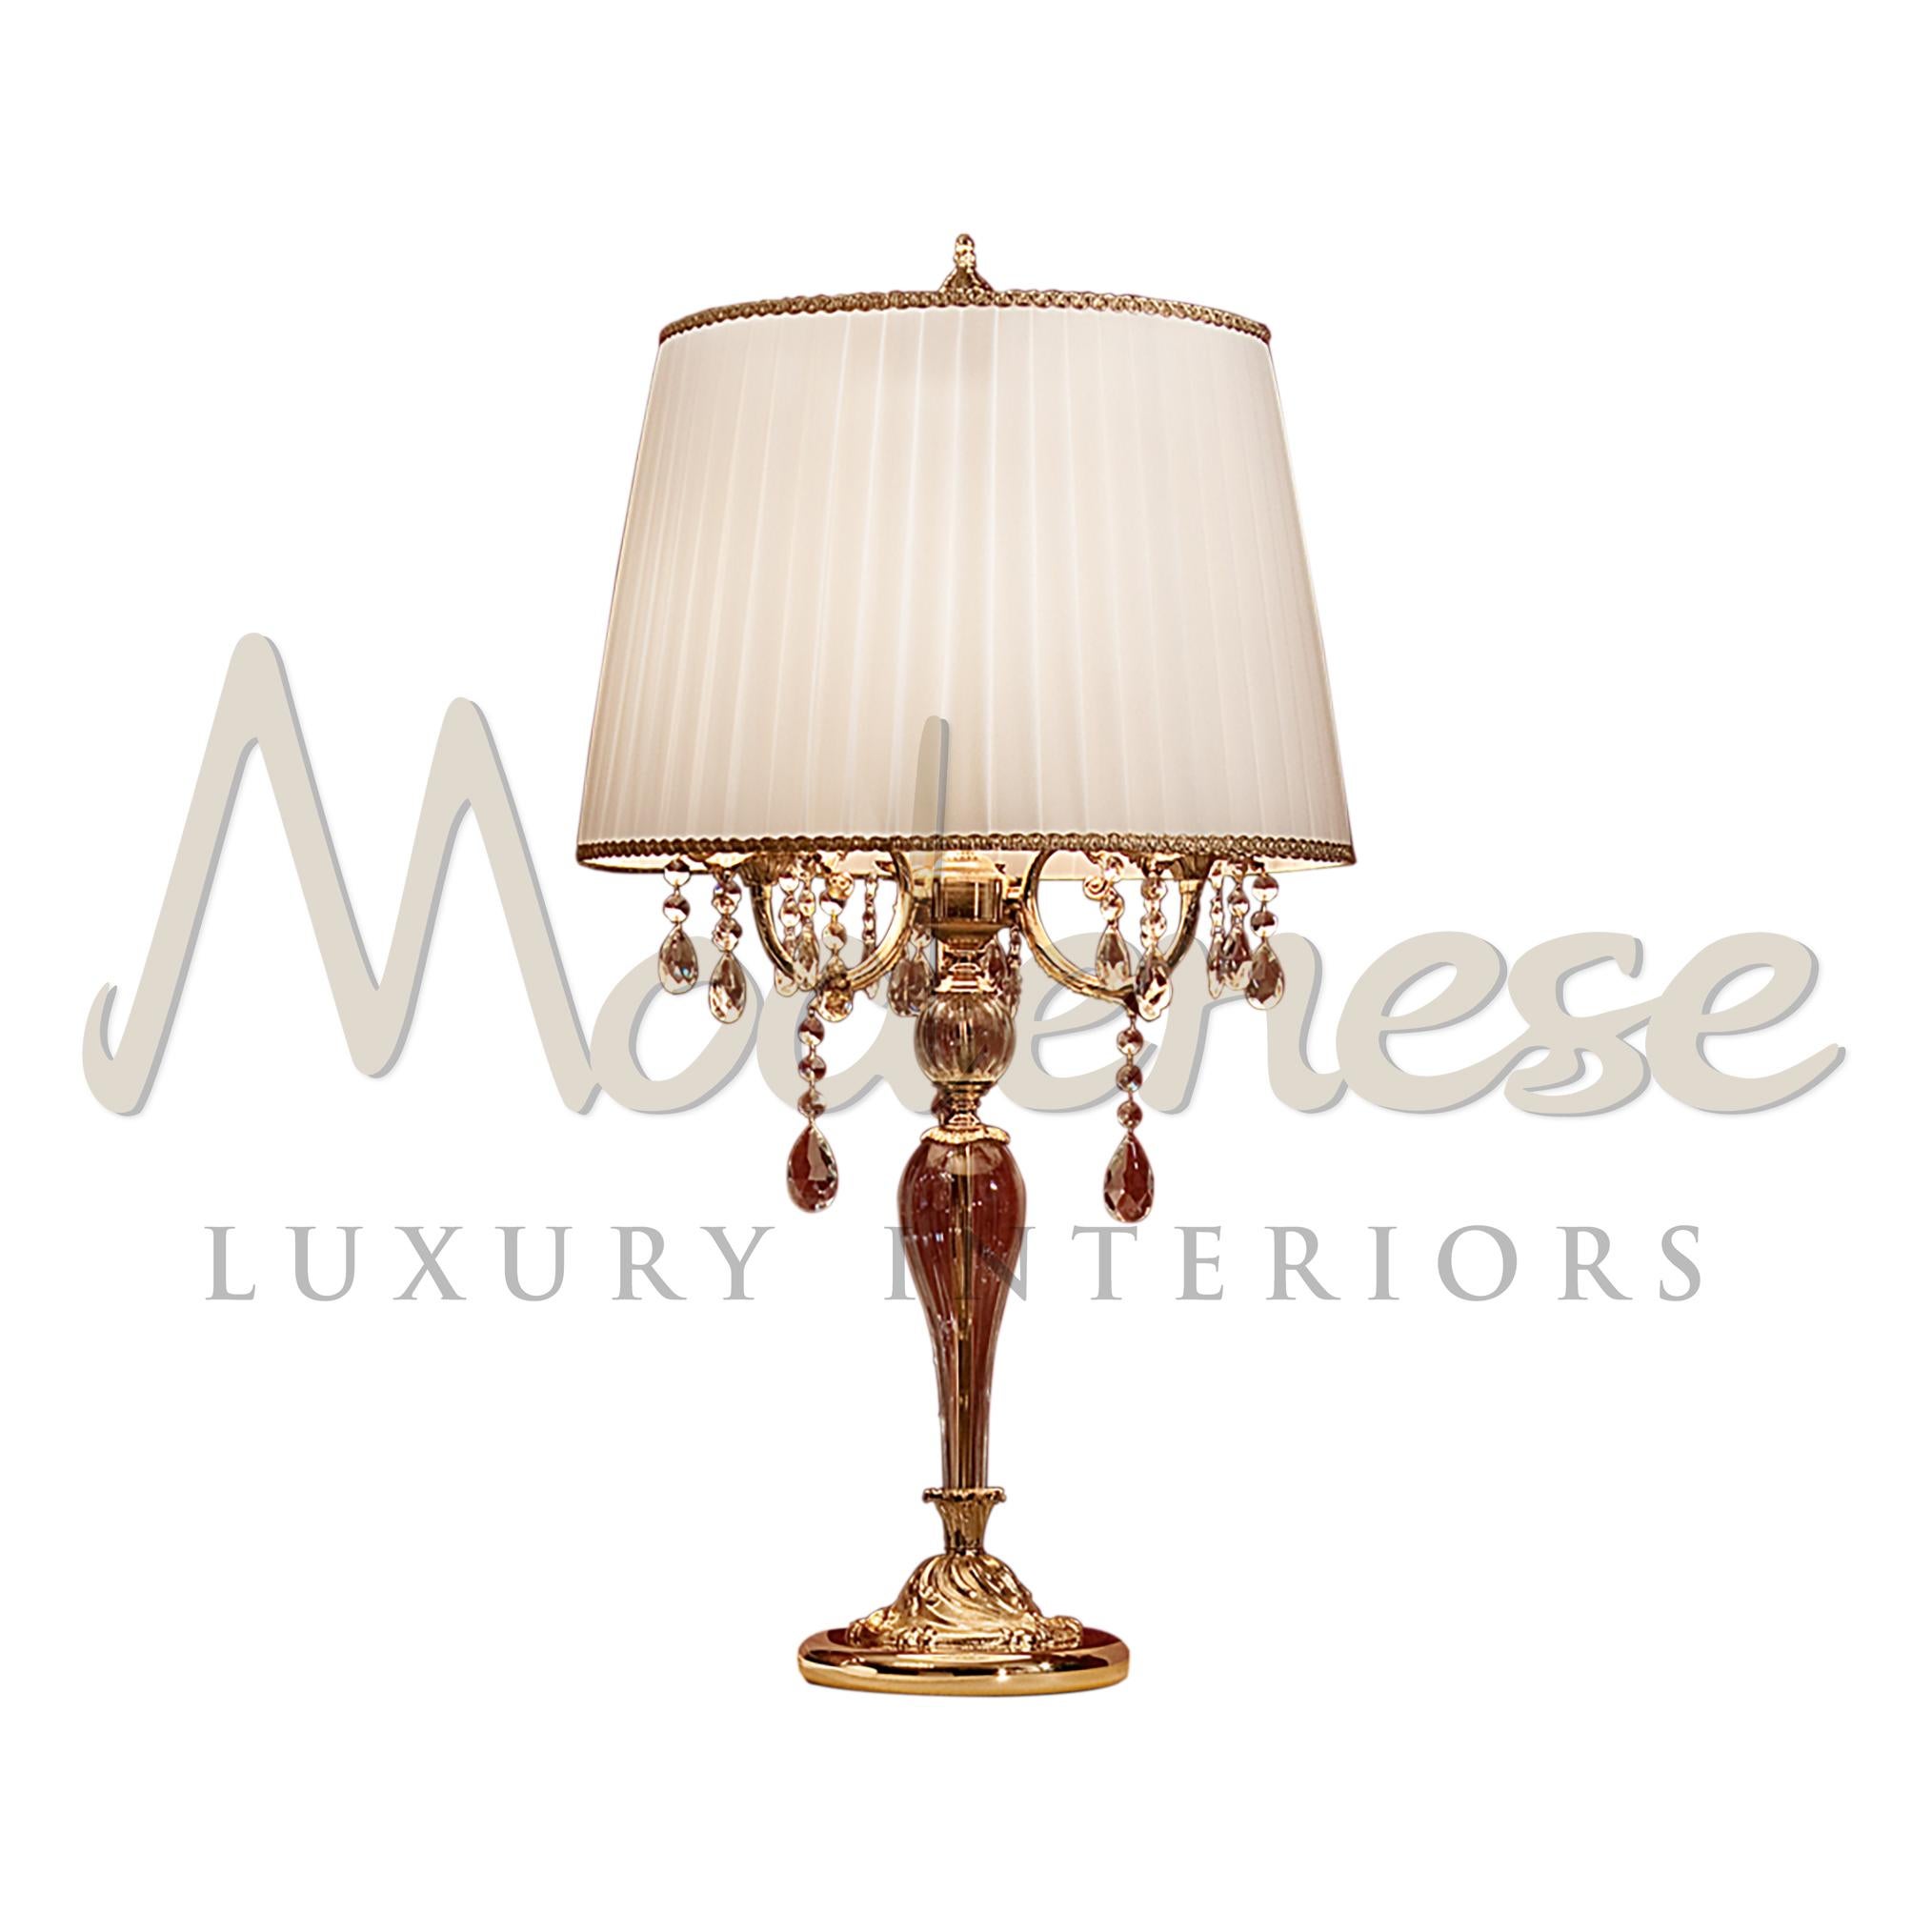 Die Designer von Modenese Luxury Interiors haben diese Tischleuchte mit einer 24-karätigen, antik vergoldeten Struktur, wunderschönen Kristallanhängern in Scholer und eleganten Stoffen gestaltet. Dieses Modell benötigt 3 einzelne